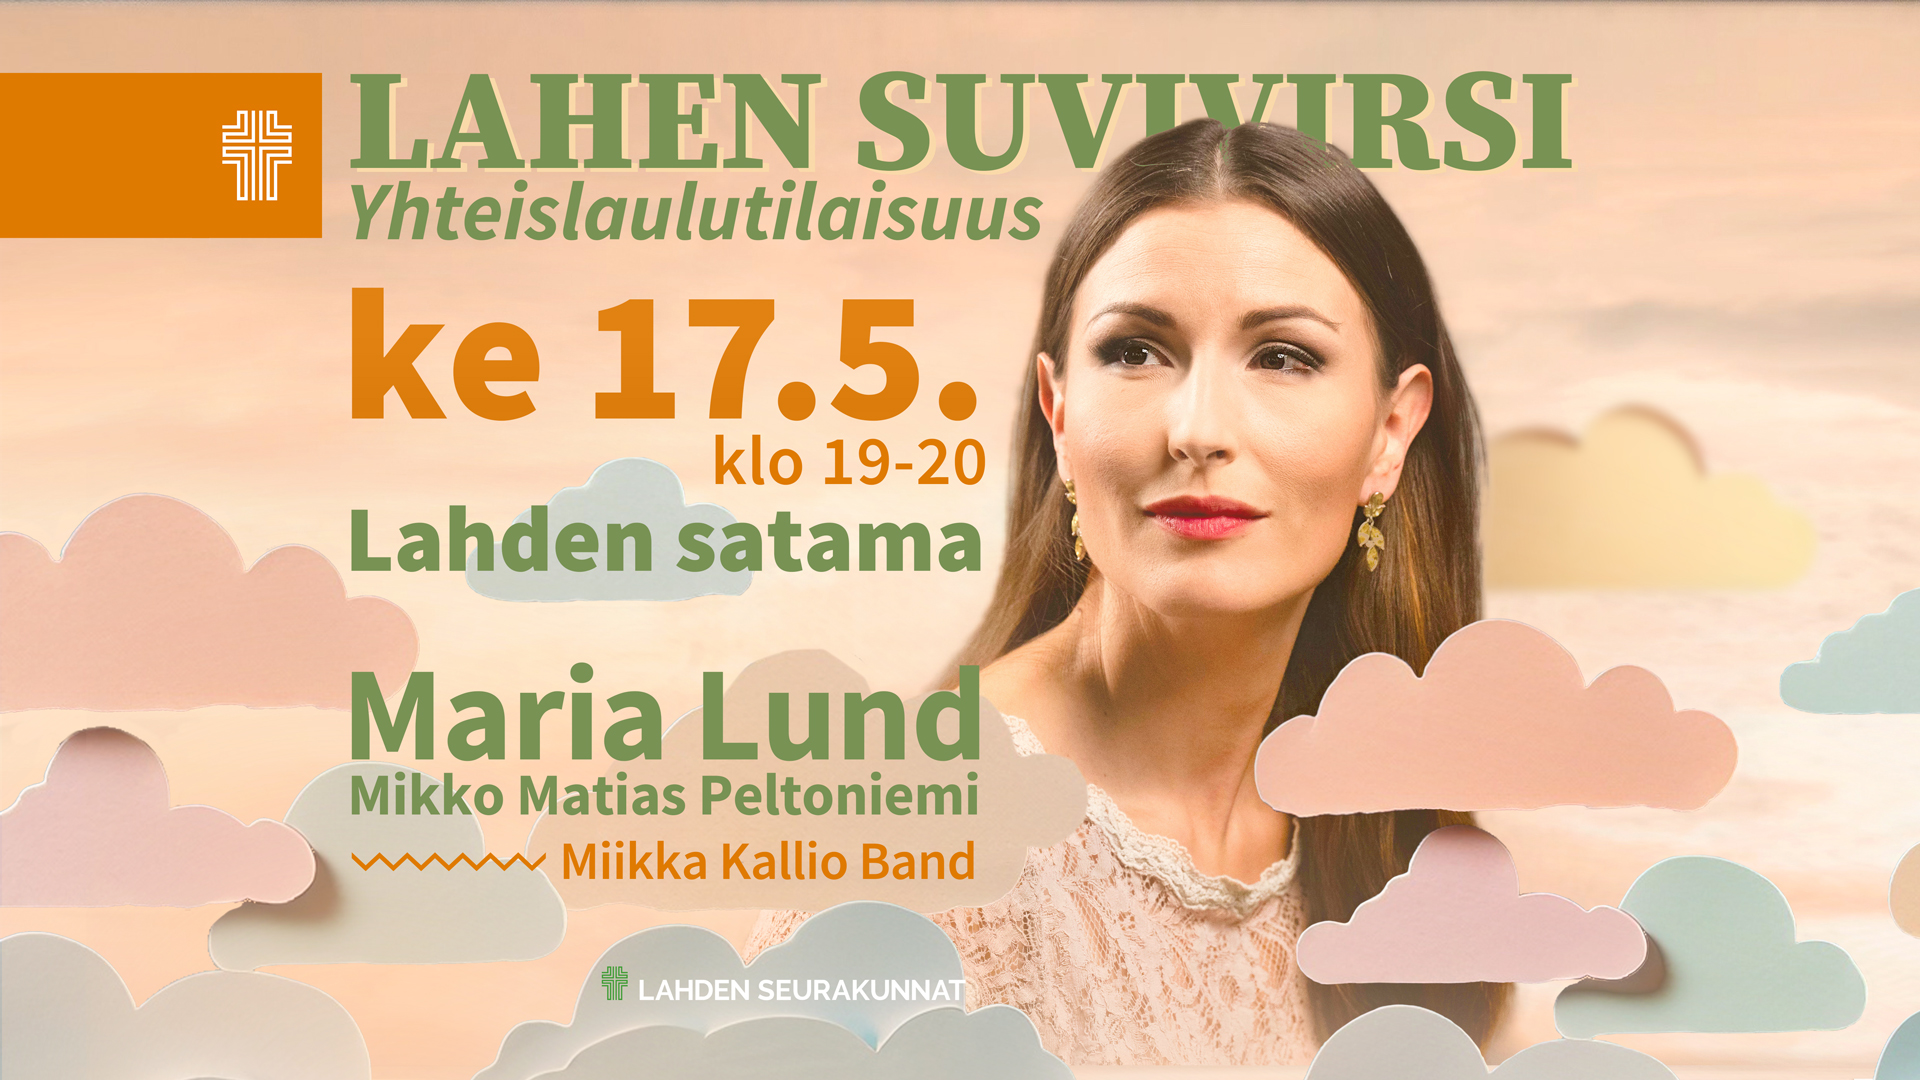 Laulaja Tamara Lundin valokuva ja mainostekstit: Lahen Suvivirsi Ke 17.5. klo 19-20 Lahden satamassa. Miikk...